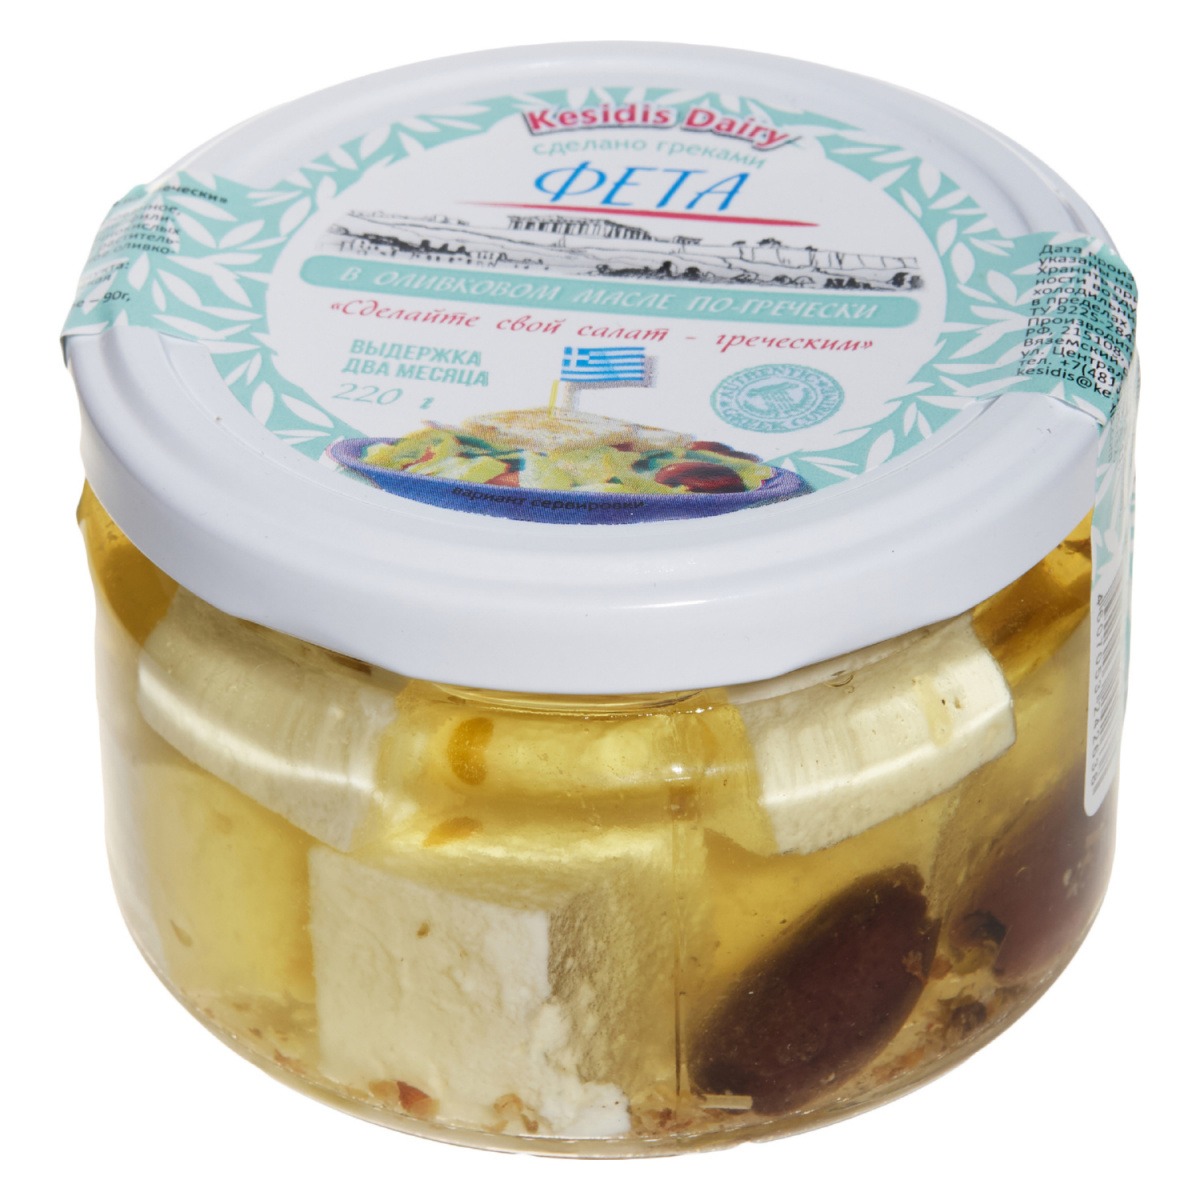 Сыр фета Kesidis Dairy кубики в оливковом масле со специями 45%, 220 г